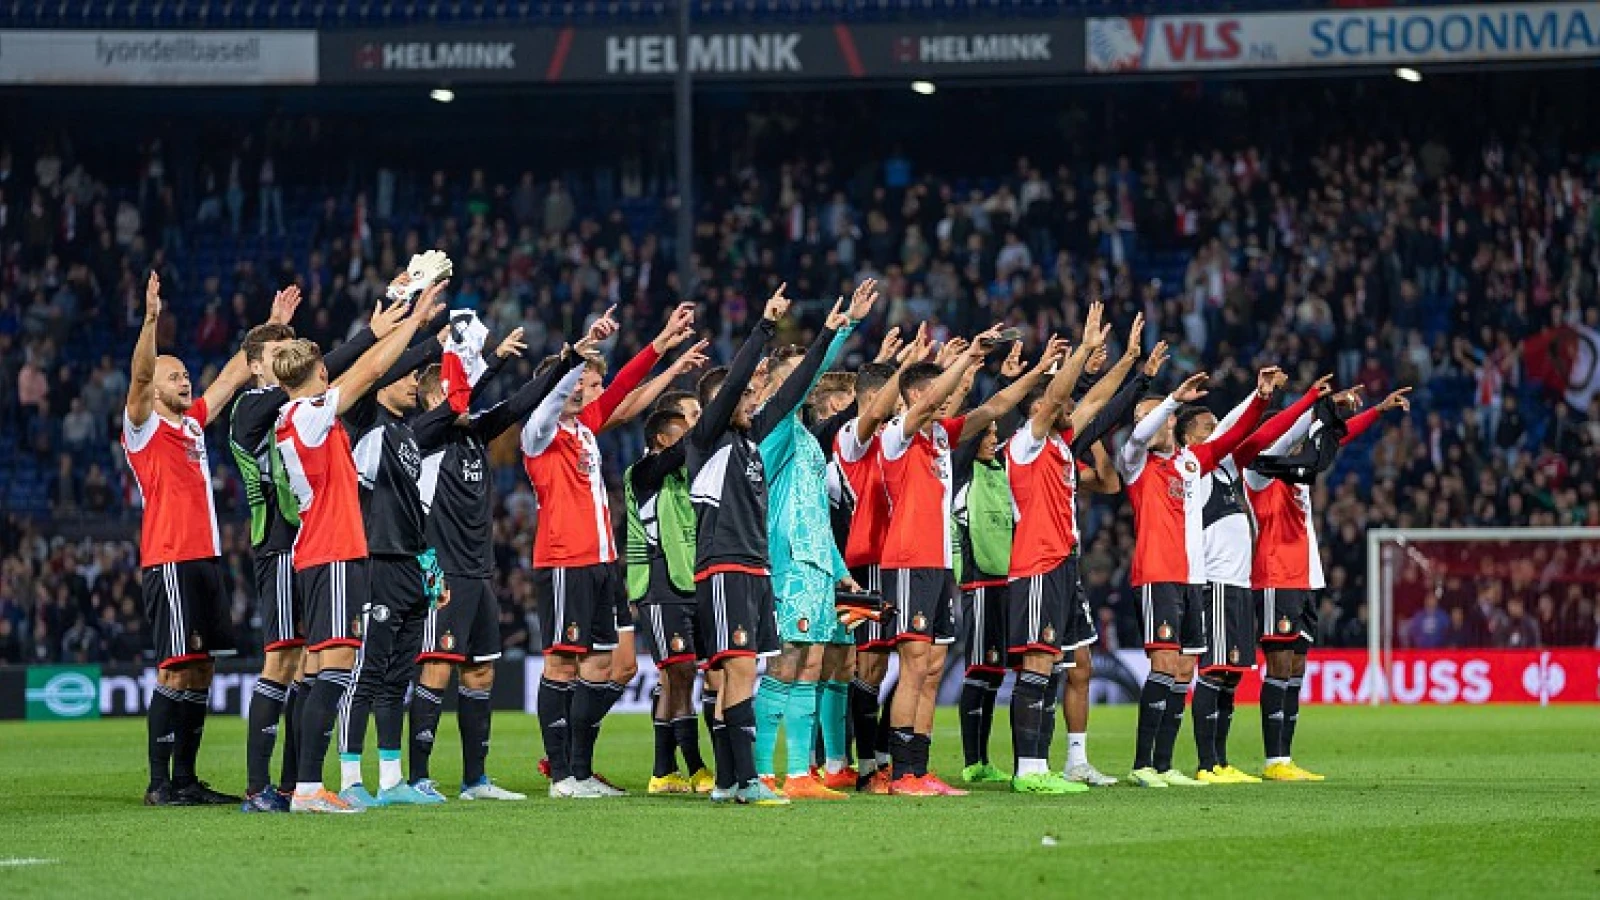 OVERZICHT | Het jaar van Feyenoord deel 2